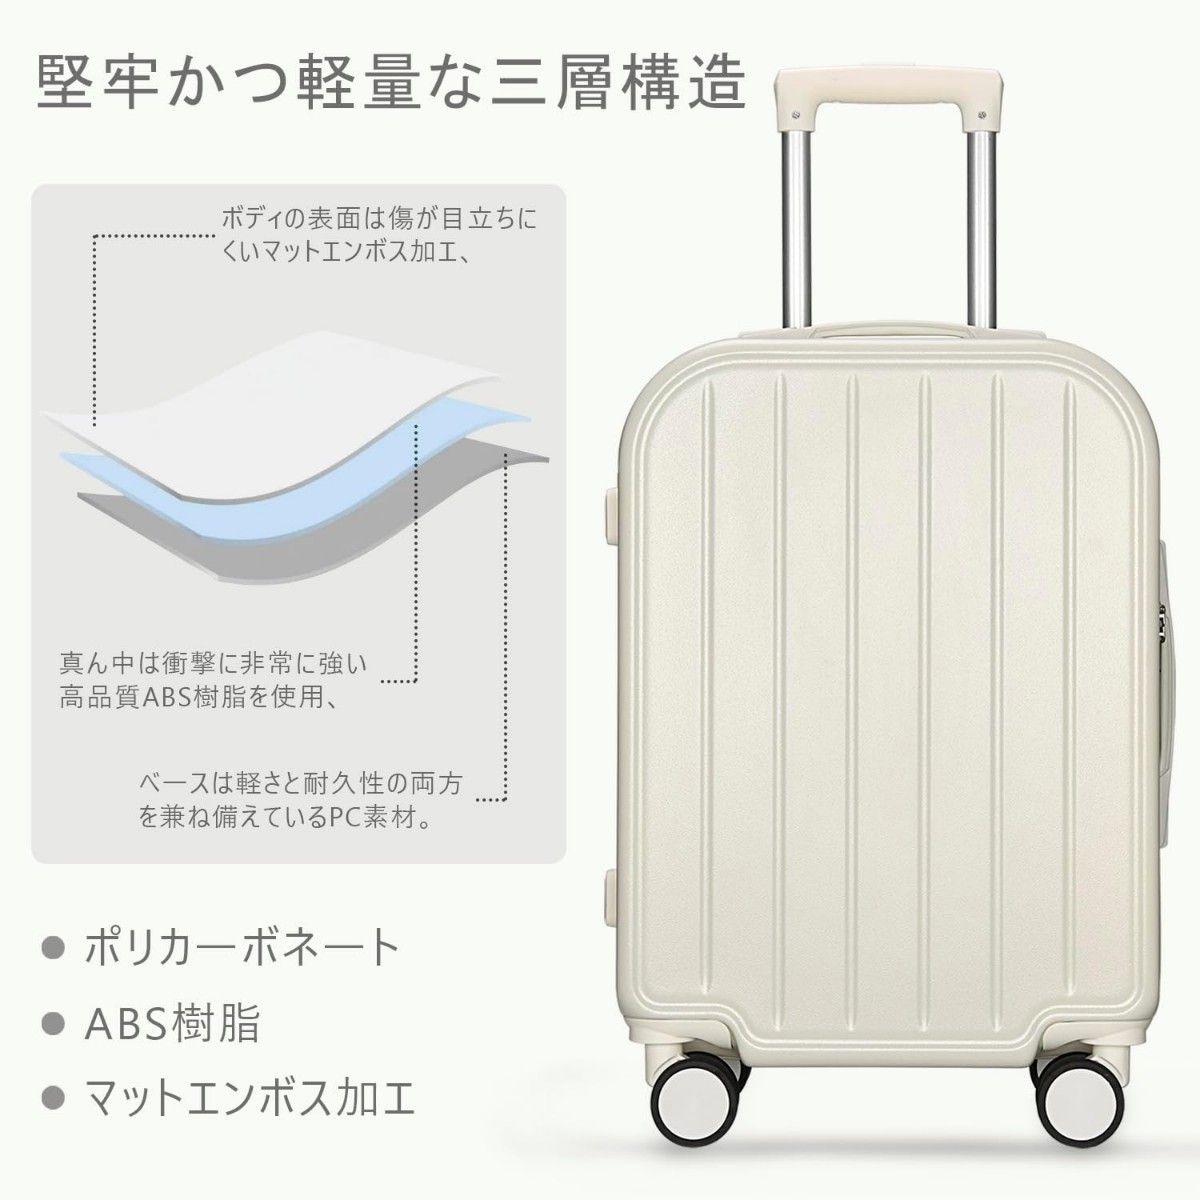 スーツケース 機内持ち込み キャリーケース キャリーバッグ USB充電ポート付